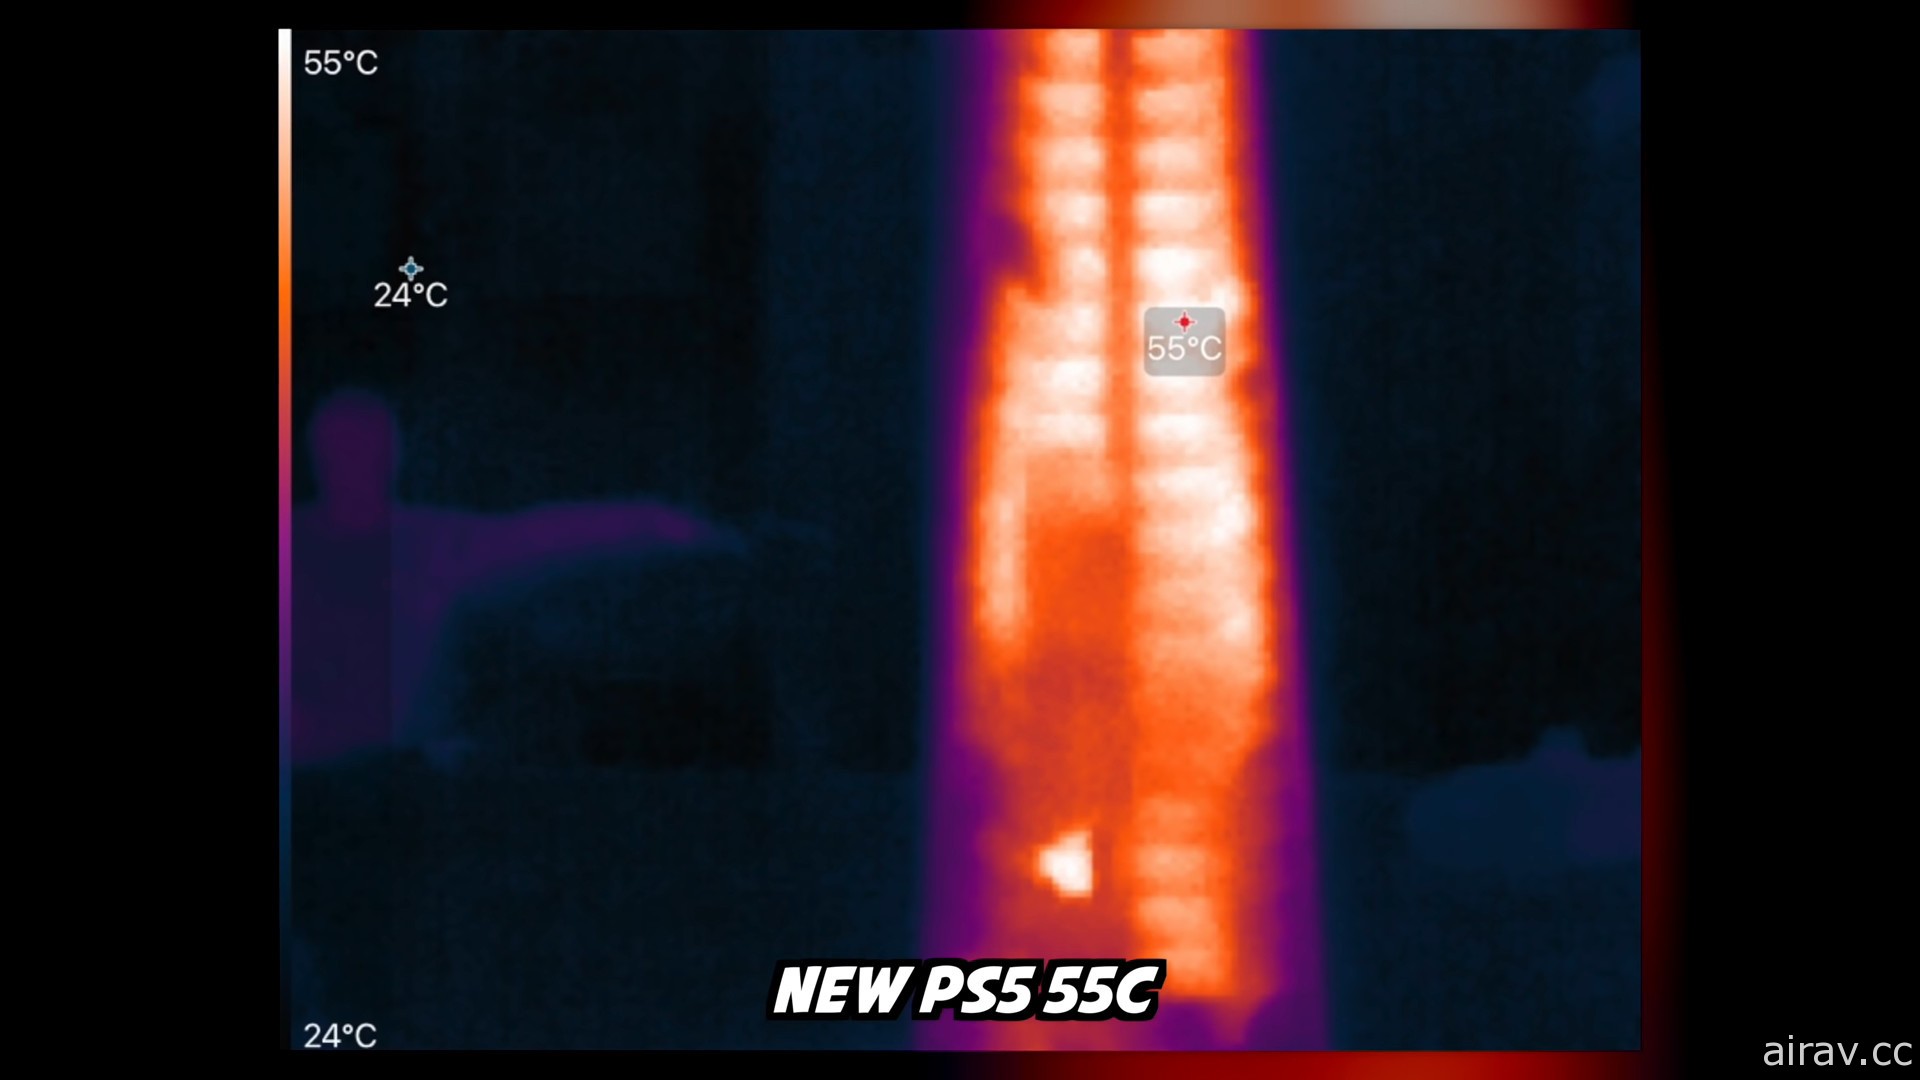 國外 YouTuber 拆機驗證新型號 PS5 主機變更點 確認散熱片尺寸明顯 “縮水”